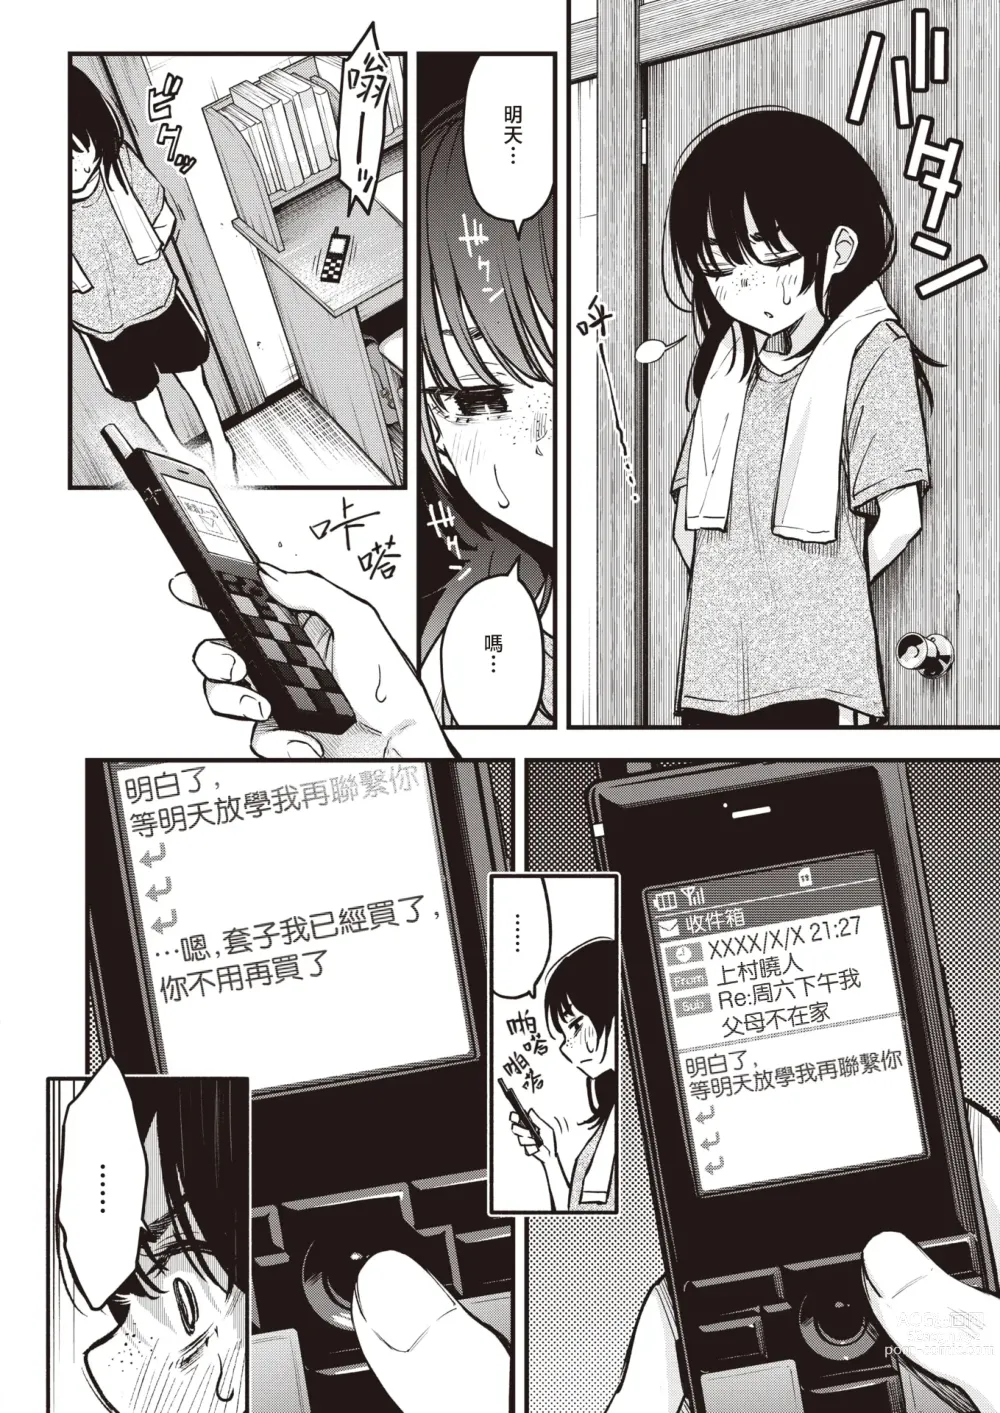 Page 3 of manga 内向友人的性爱才是最具风情的呢#2 -天野结华Side-